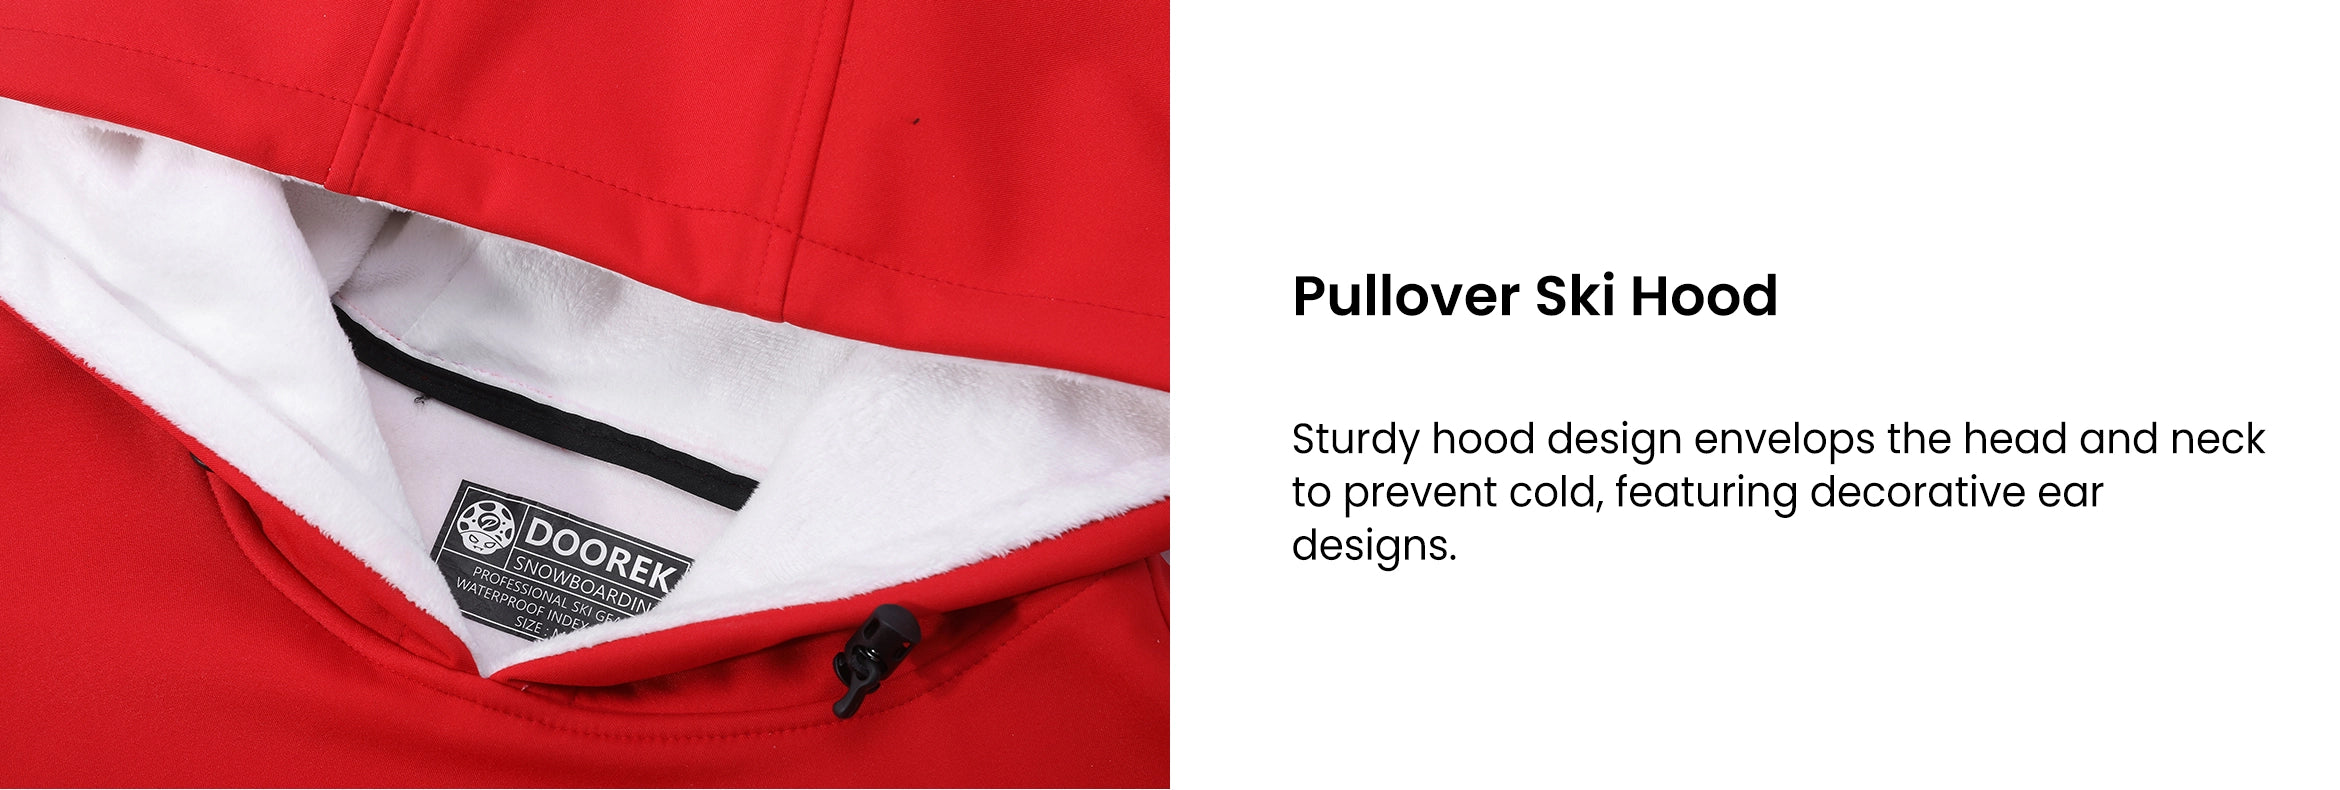 6. Pullover Ski Hood